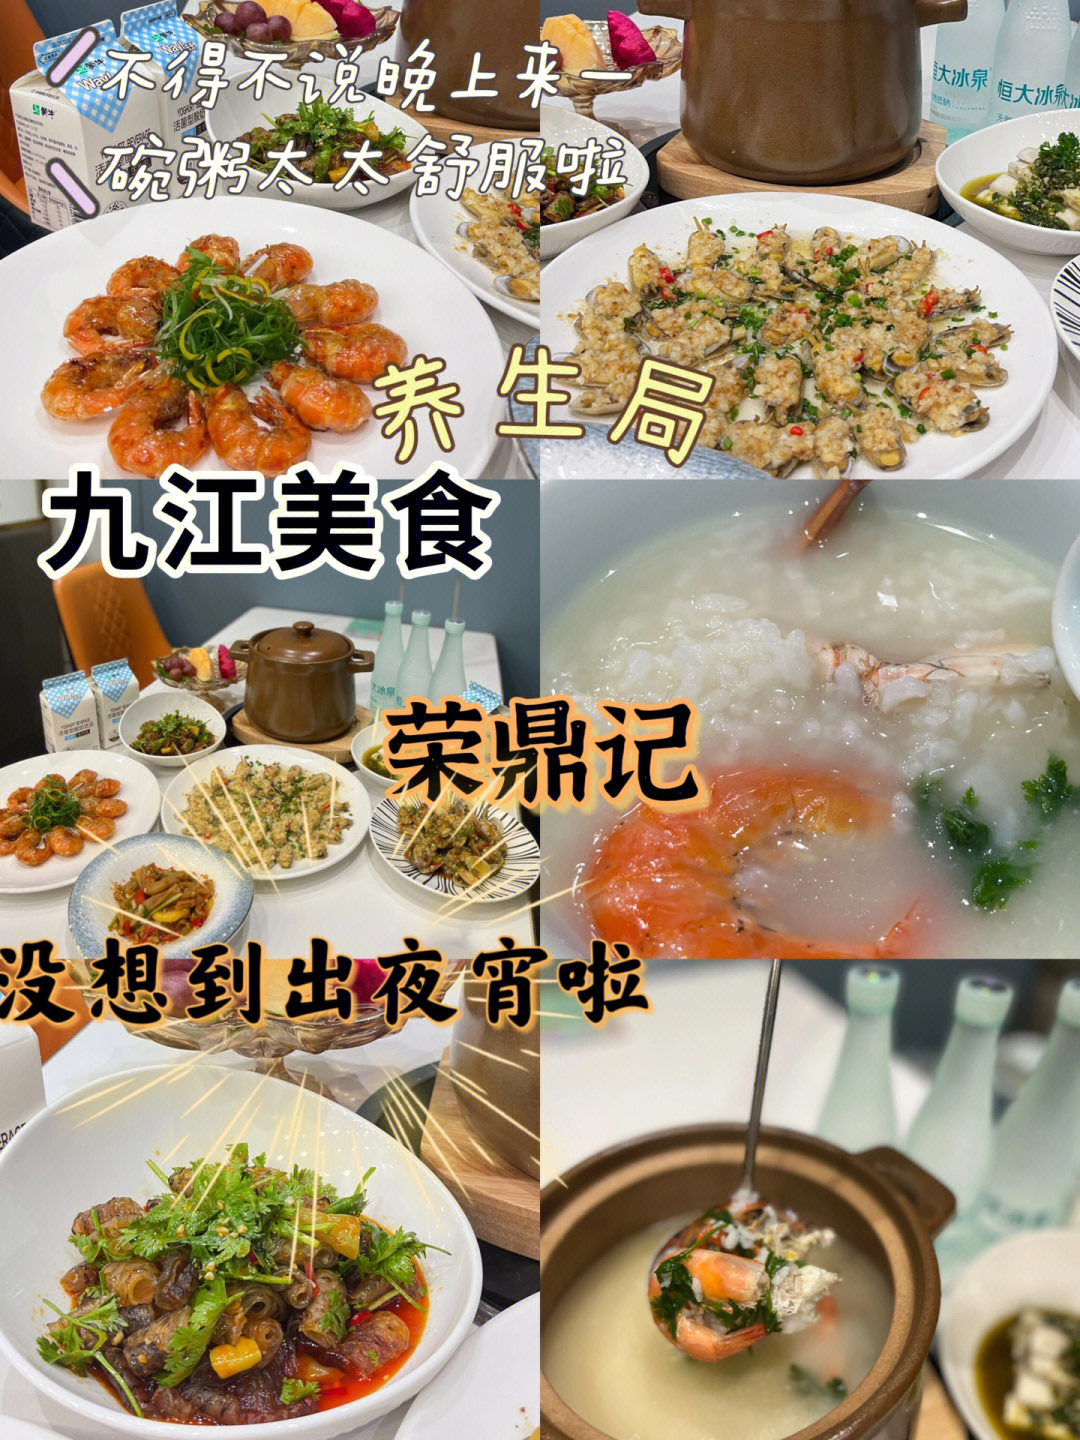 江西九江美食菜谱图片